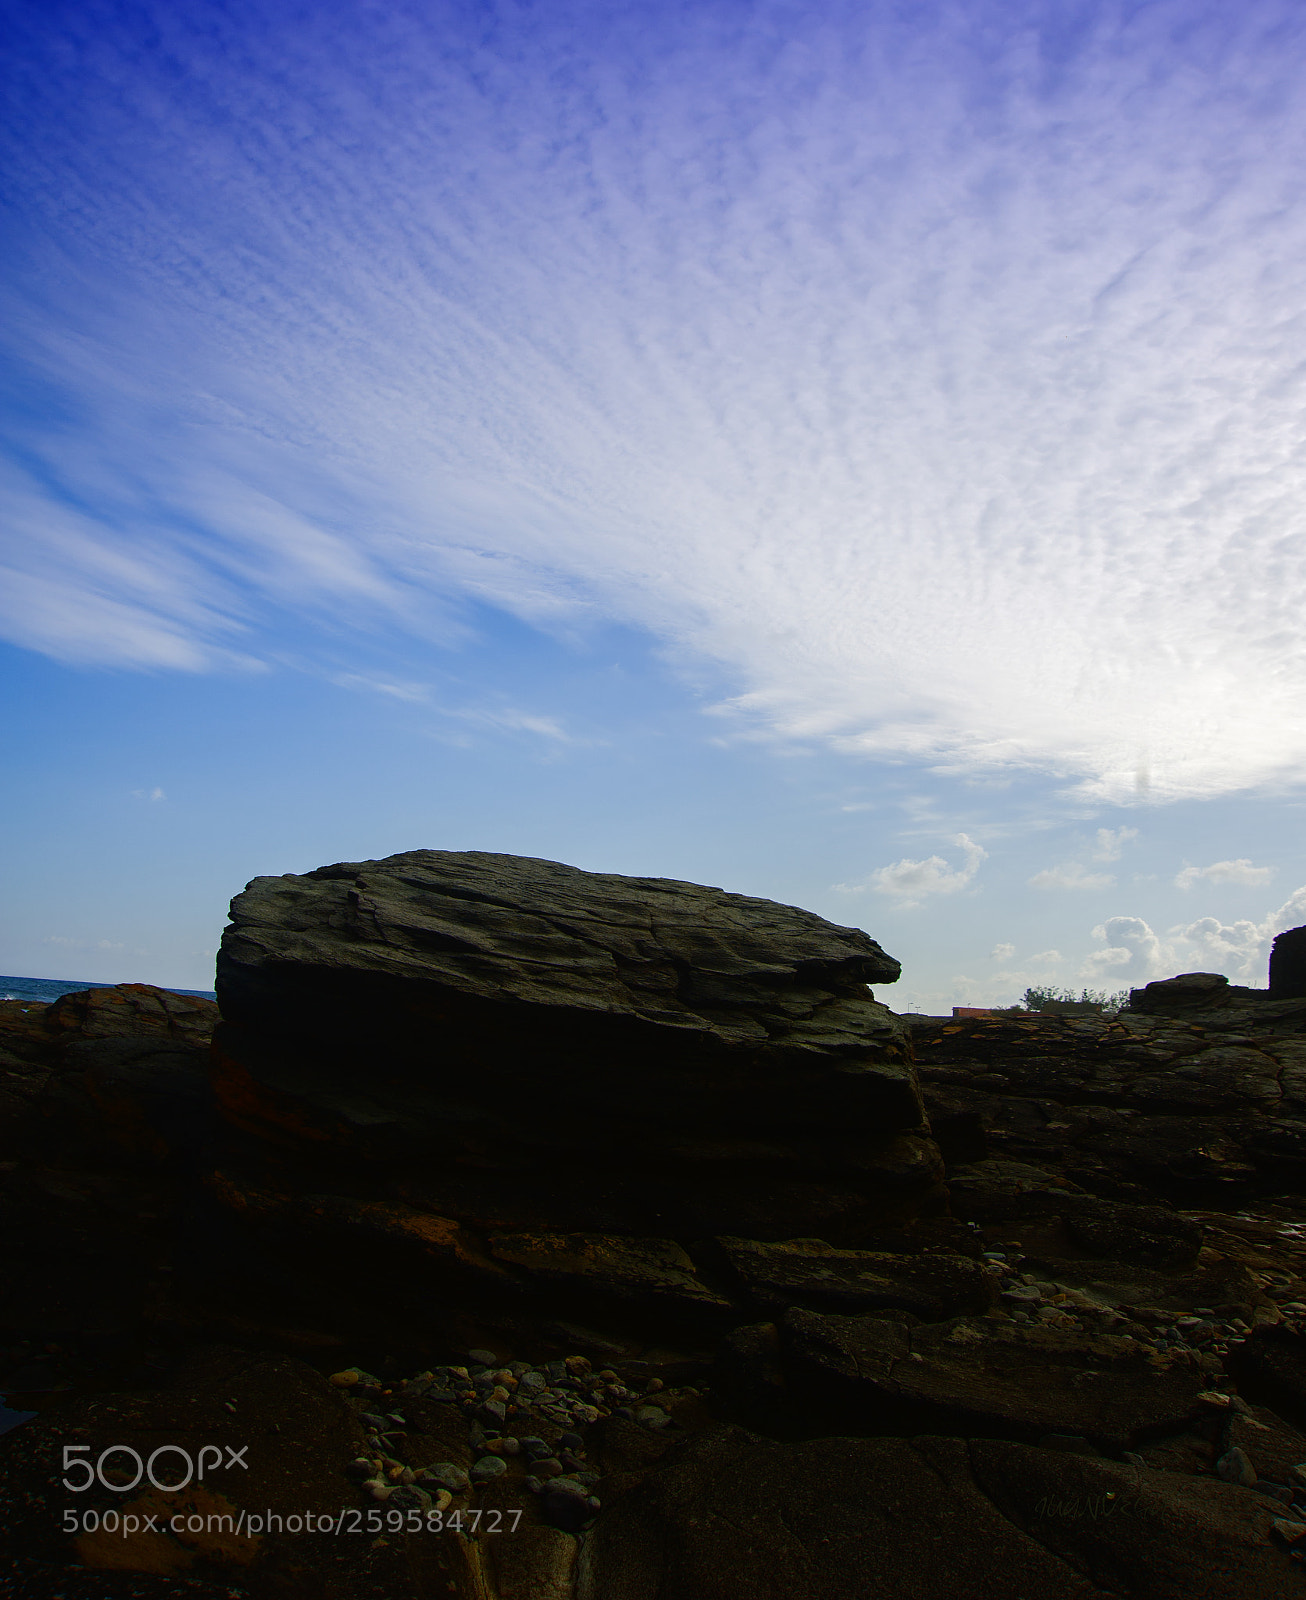 Nikon D700 sample photo. Cielo y rocas ii photography